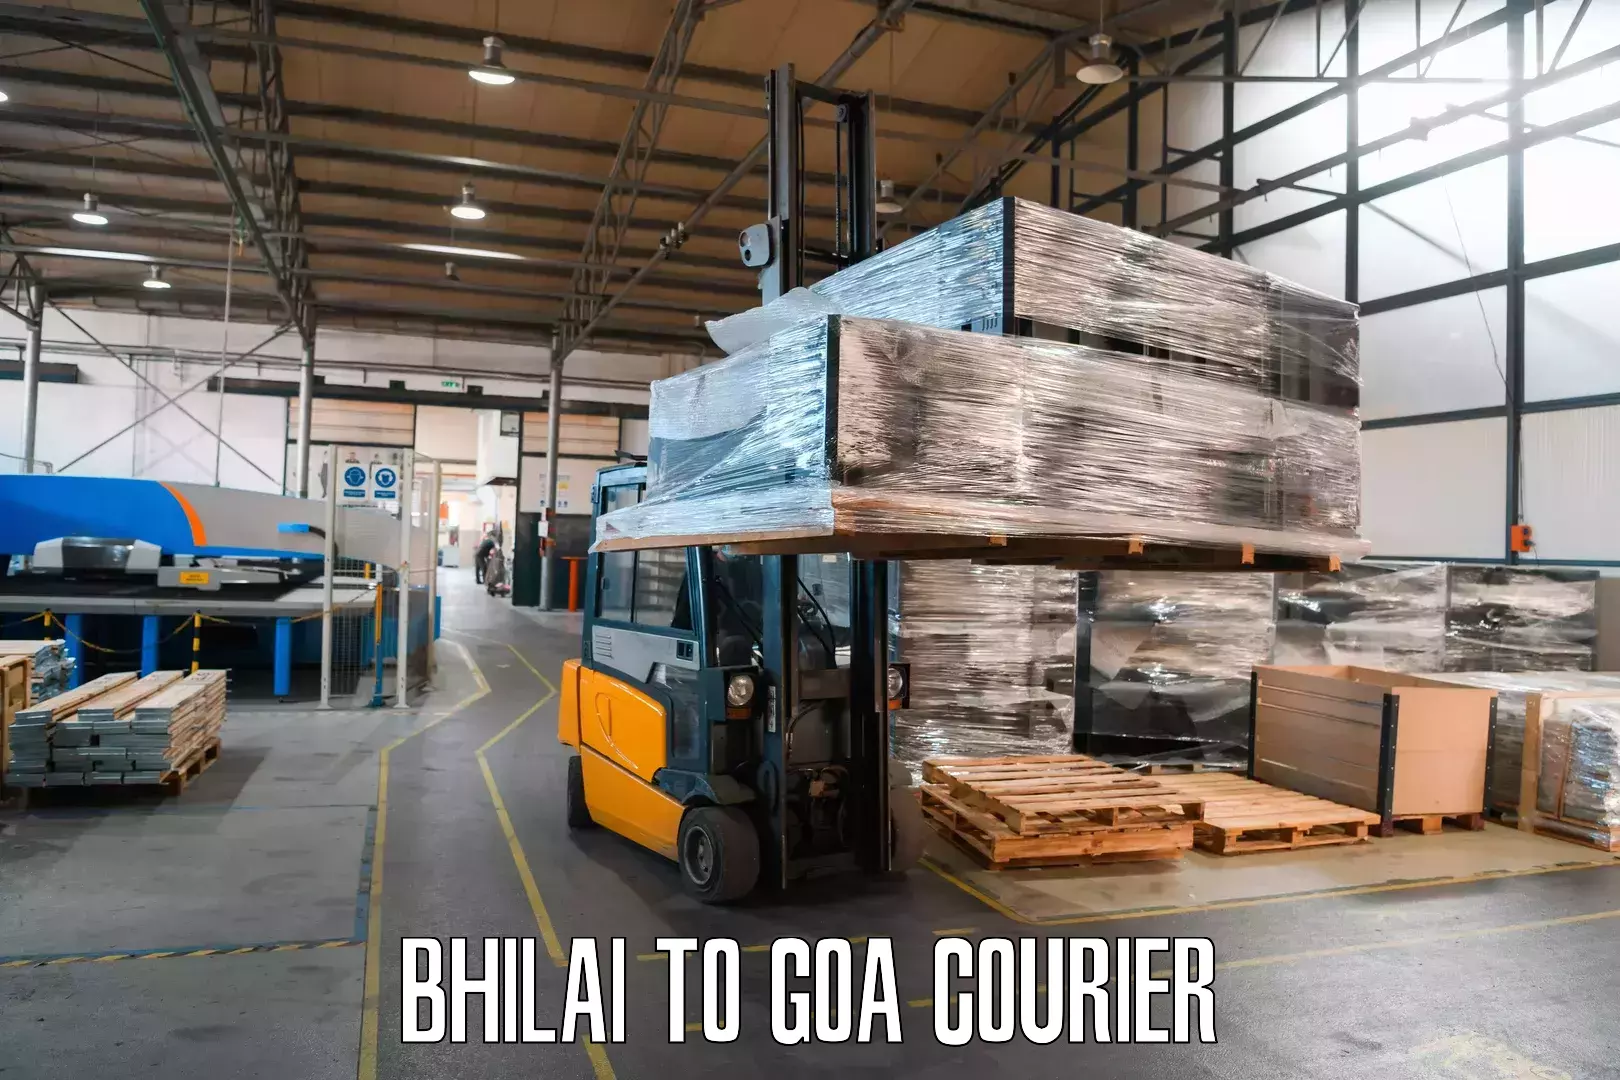 Reliable parcel services Bhilai to Bardez